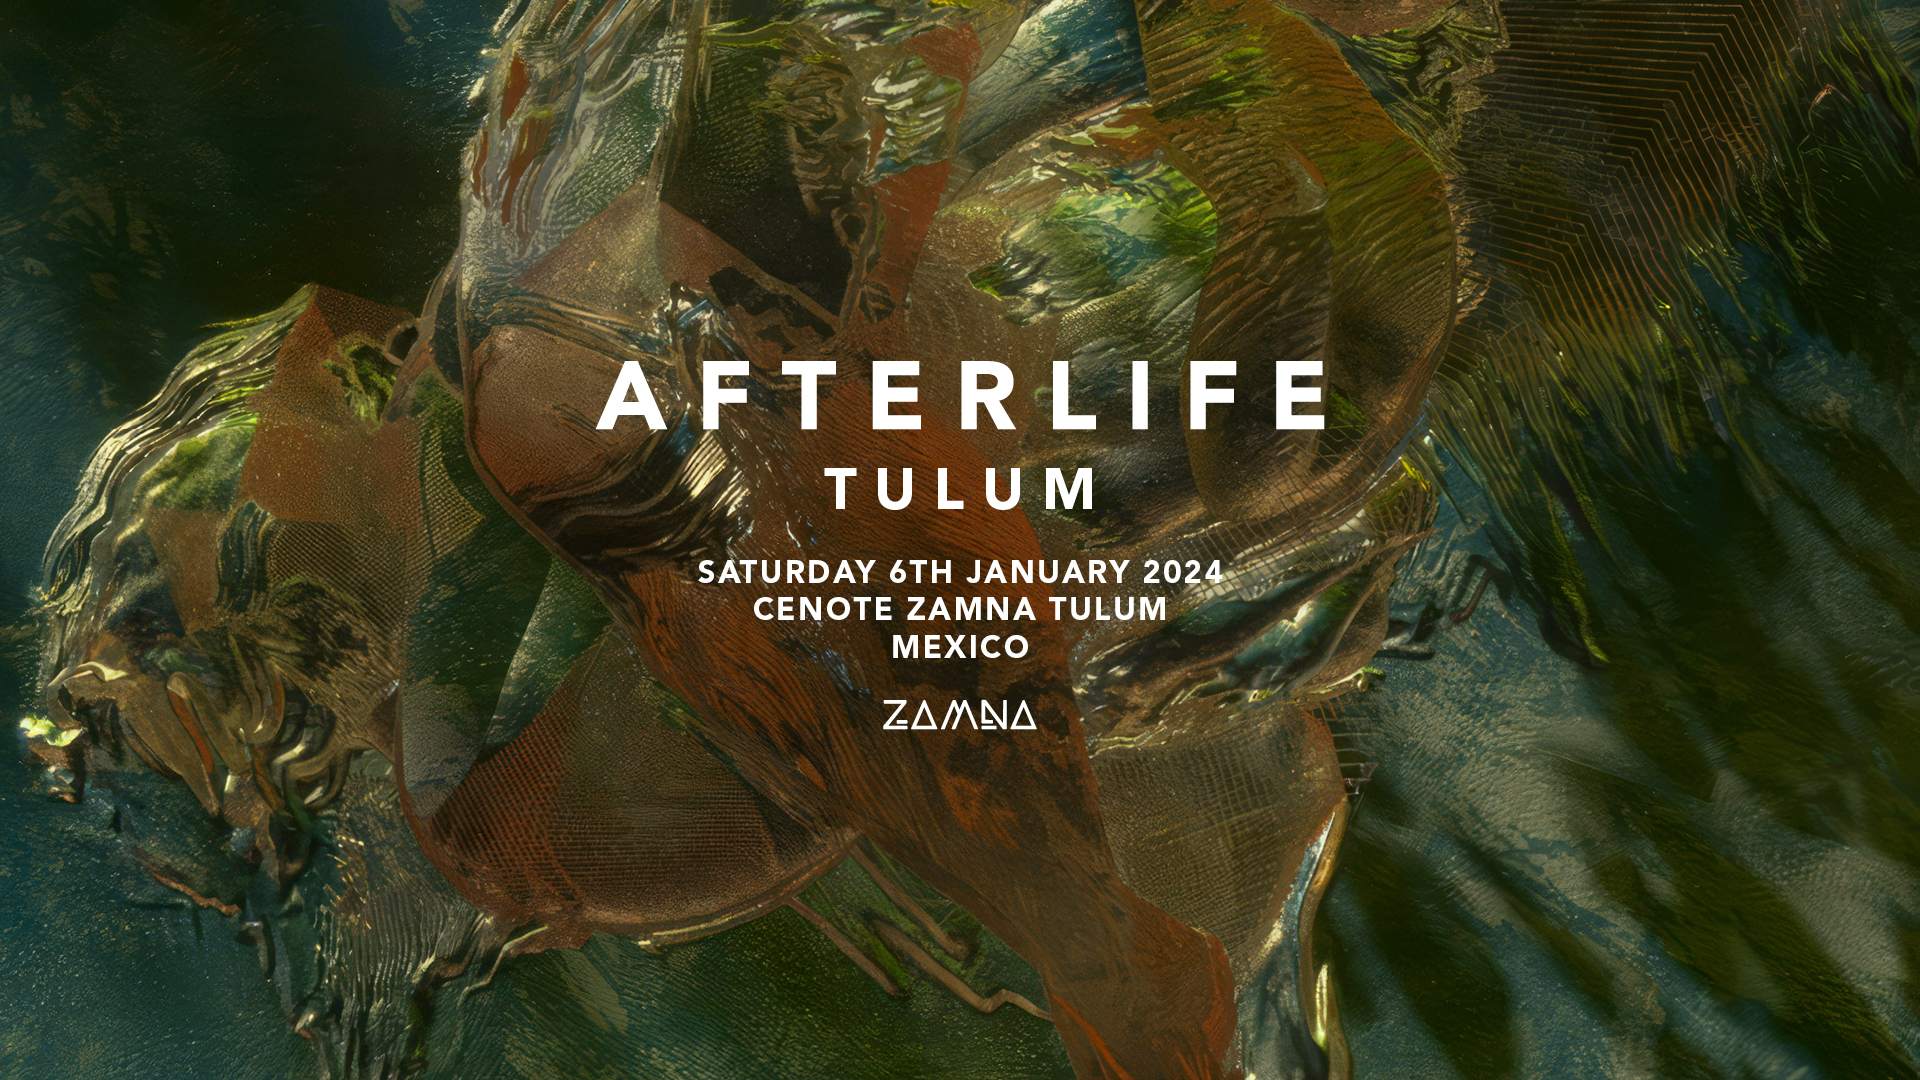 Afterlife Tulum 2024 - フライヤー表